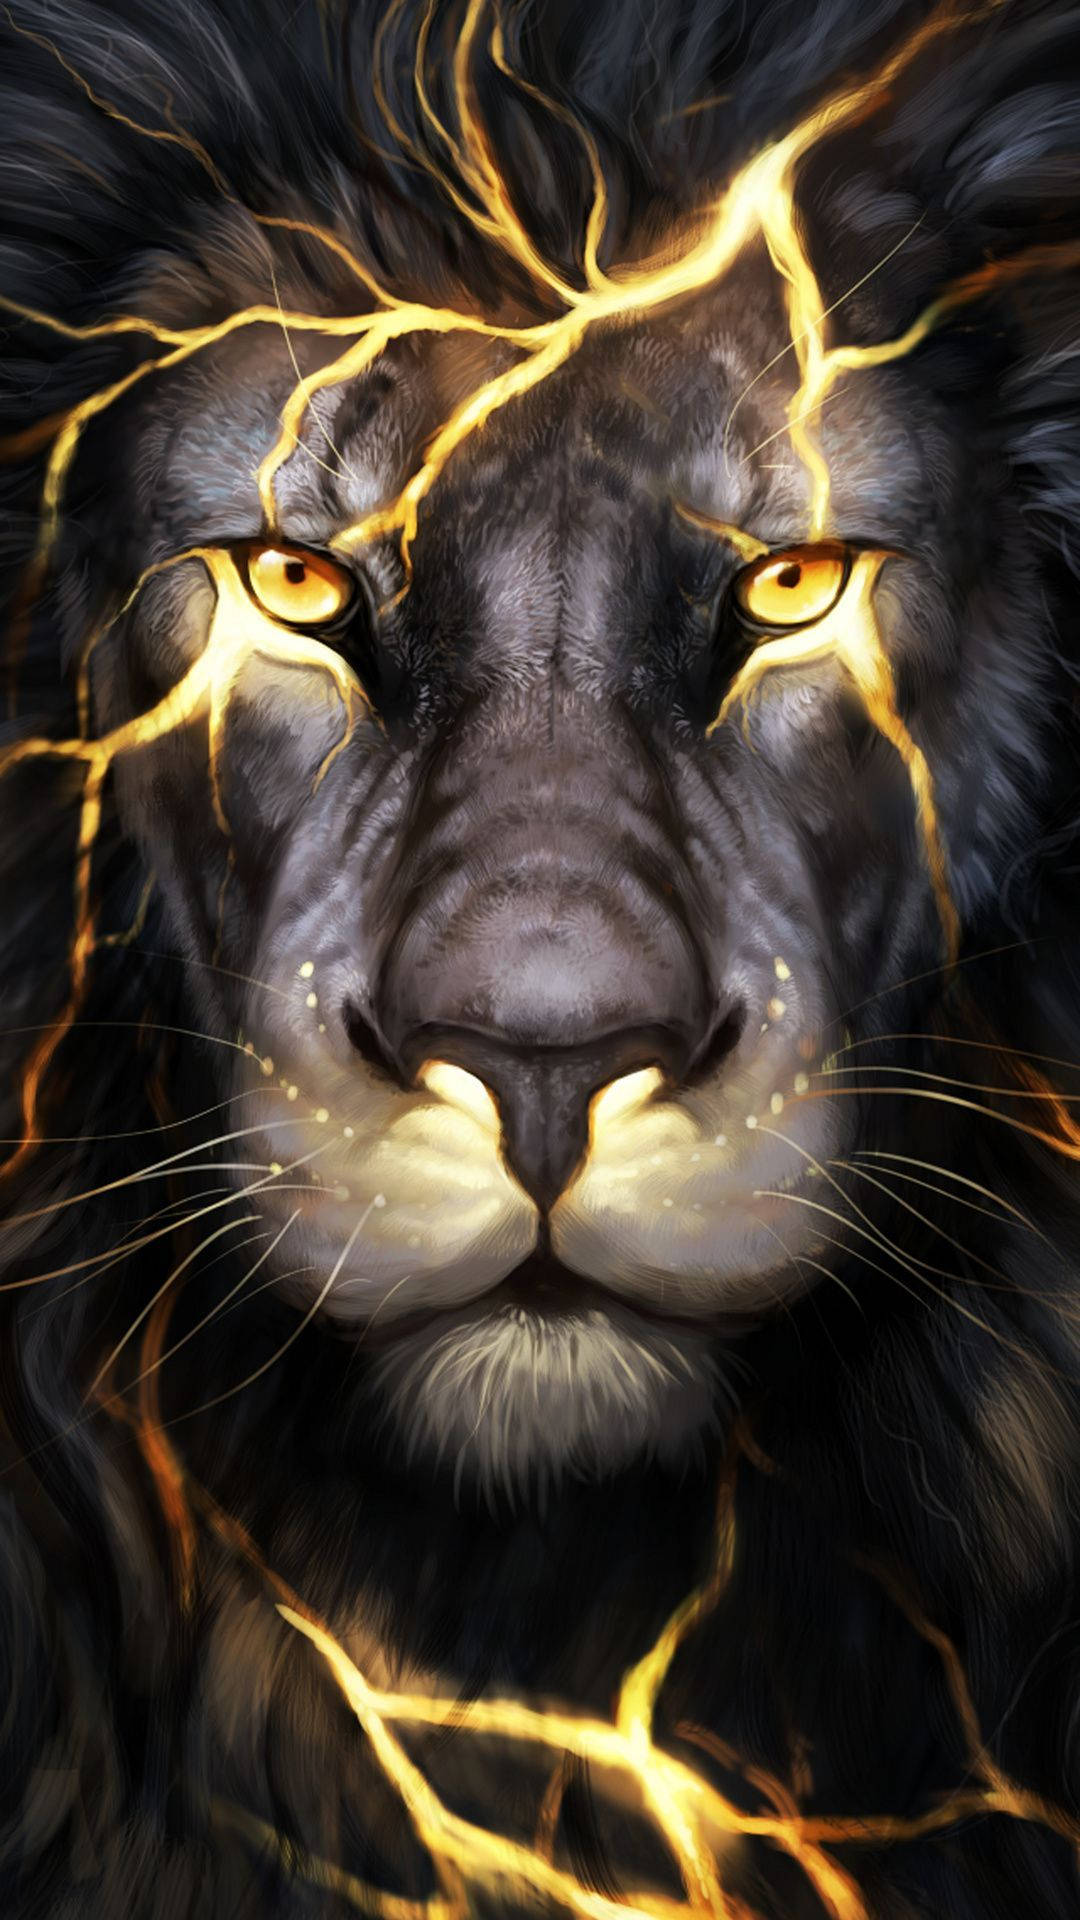 3d Lion Backdrop Cool Illustration Picture